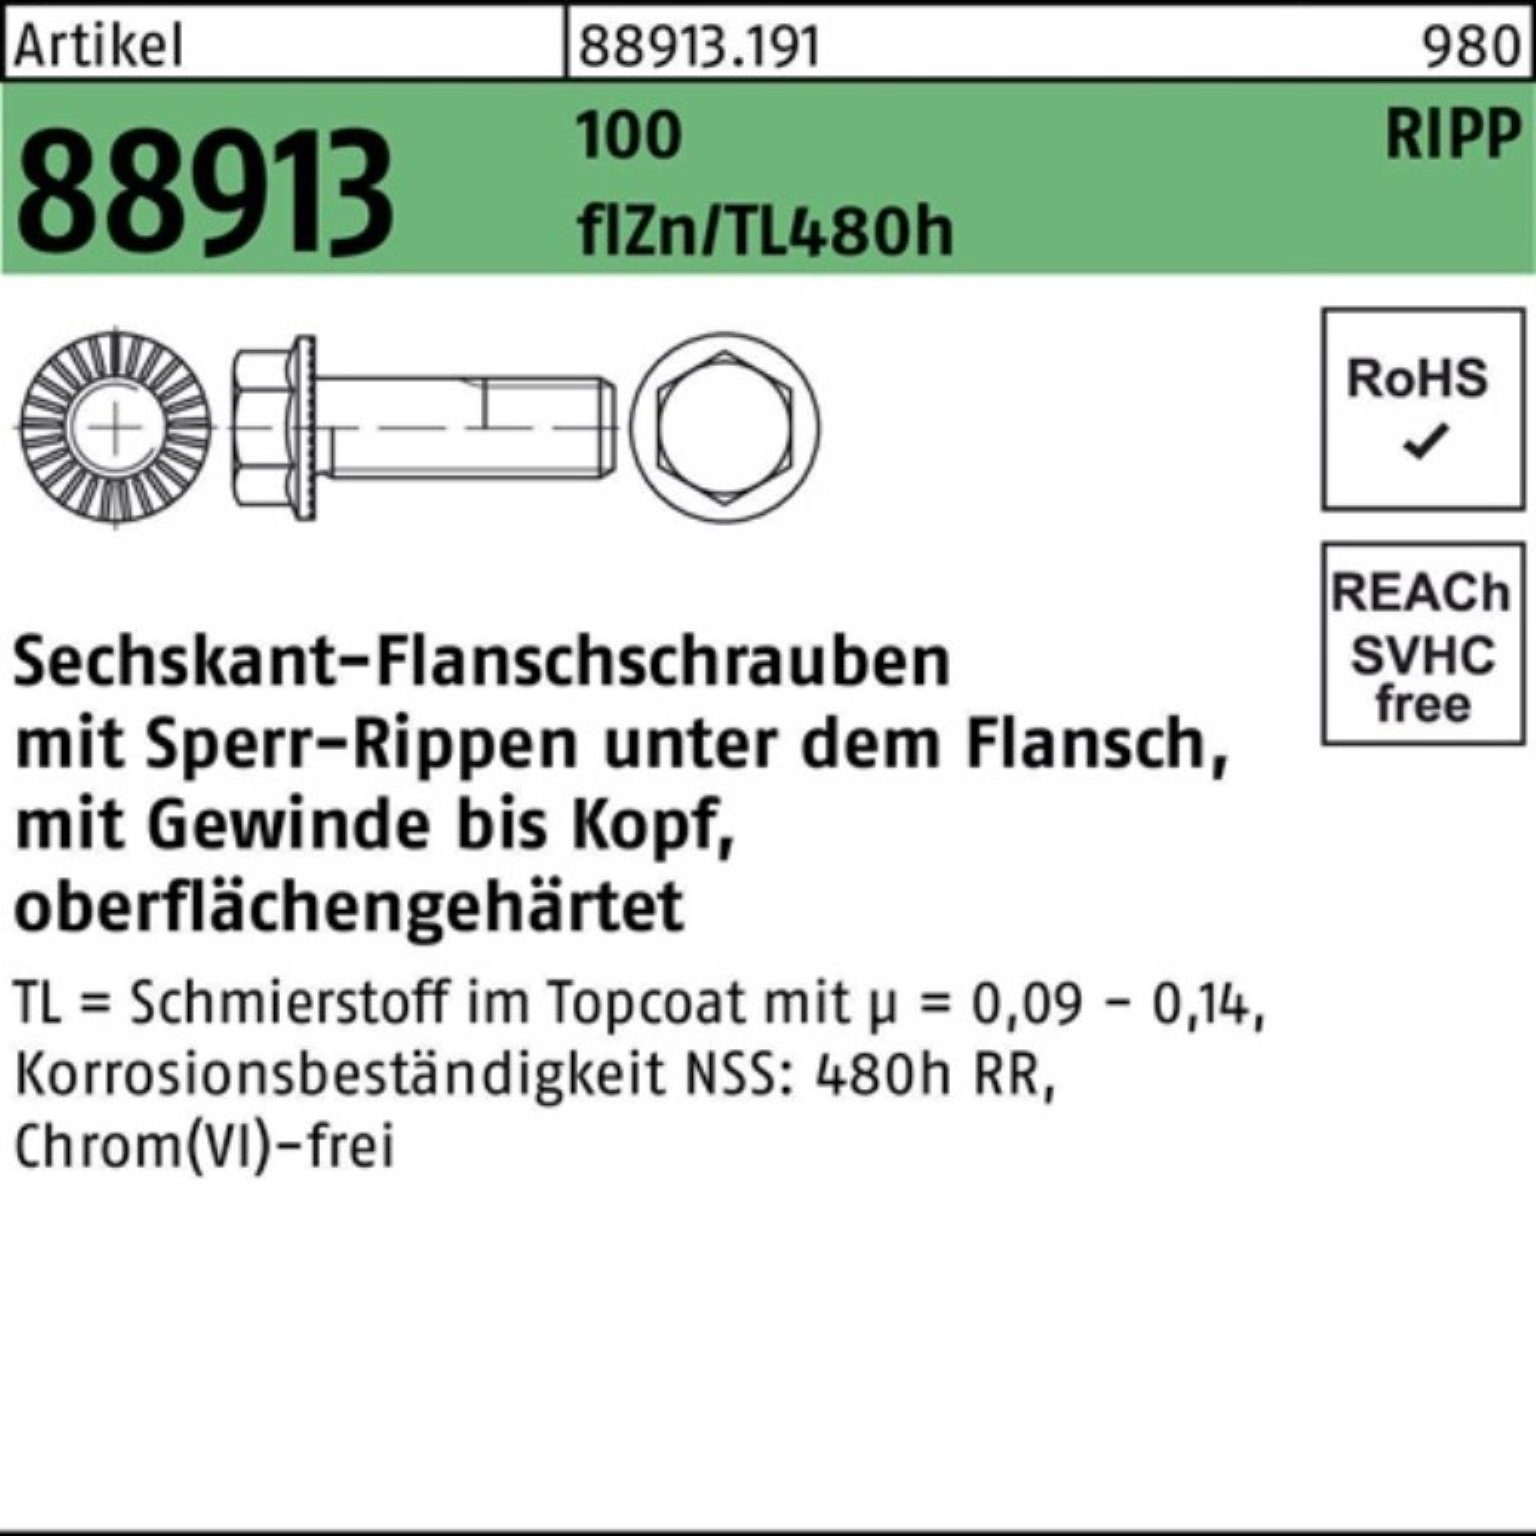 Reyher Schraube 100er Pack Sechskantflanschschraube R 88913 Sperr-Ripp VG M10x40 100 f